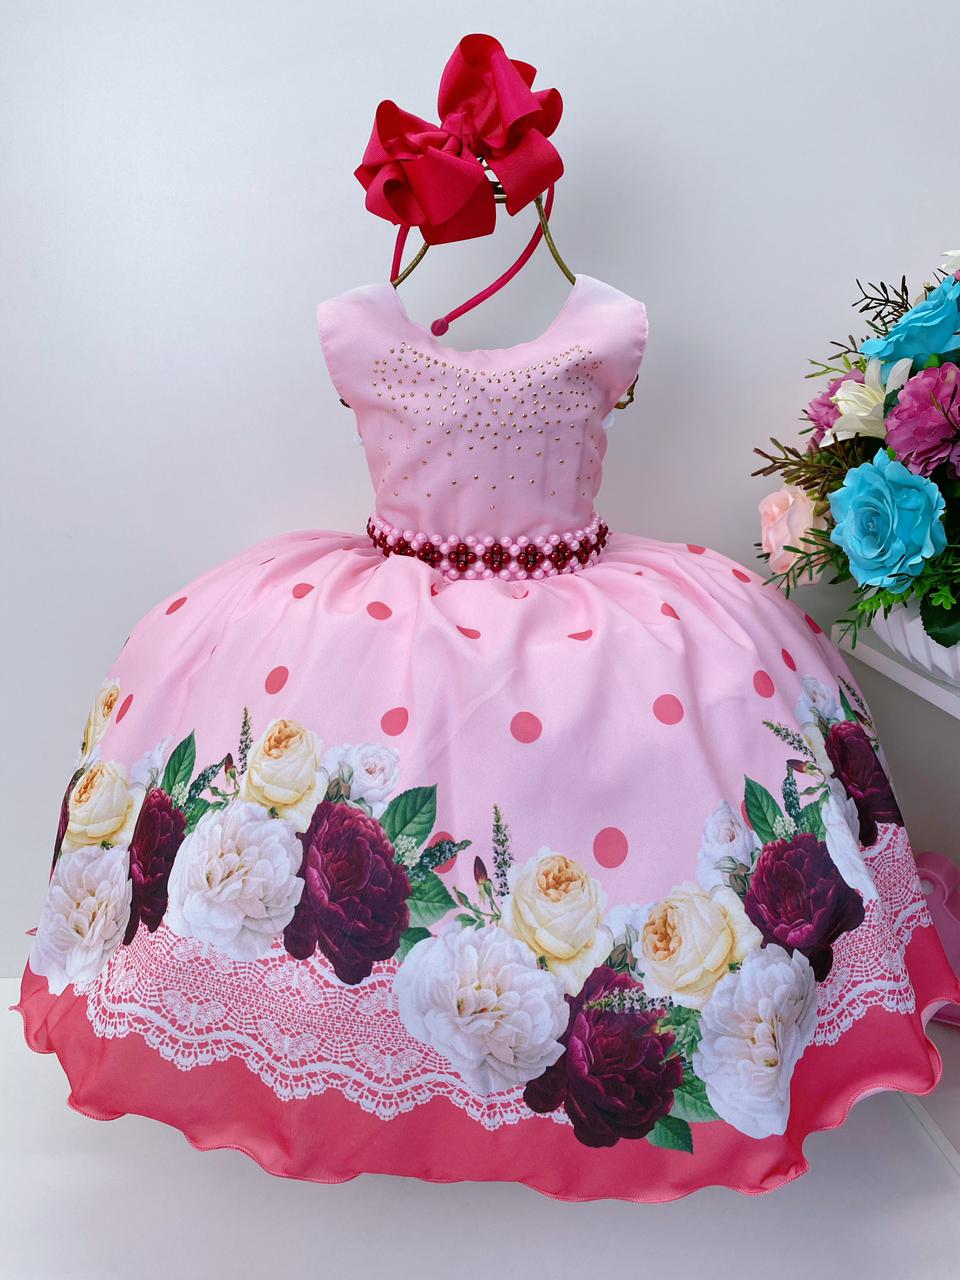 Vestido Infantil Rosa Floral Cinto Pérolas e Strass no Peito